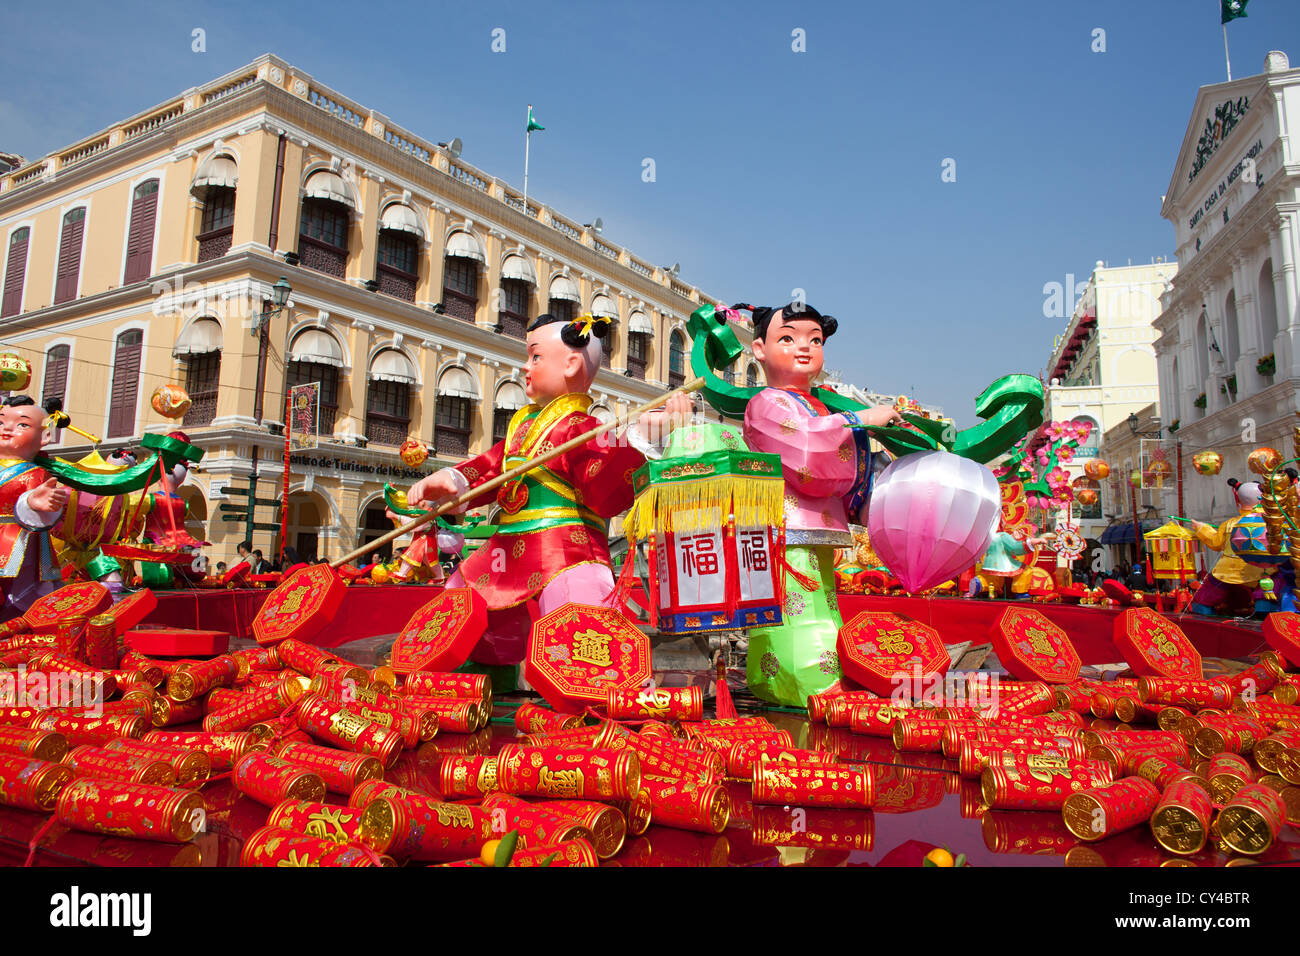 Au cours de décorations de nouvel an chinois à Macao, Chine Banque D'Images